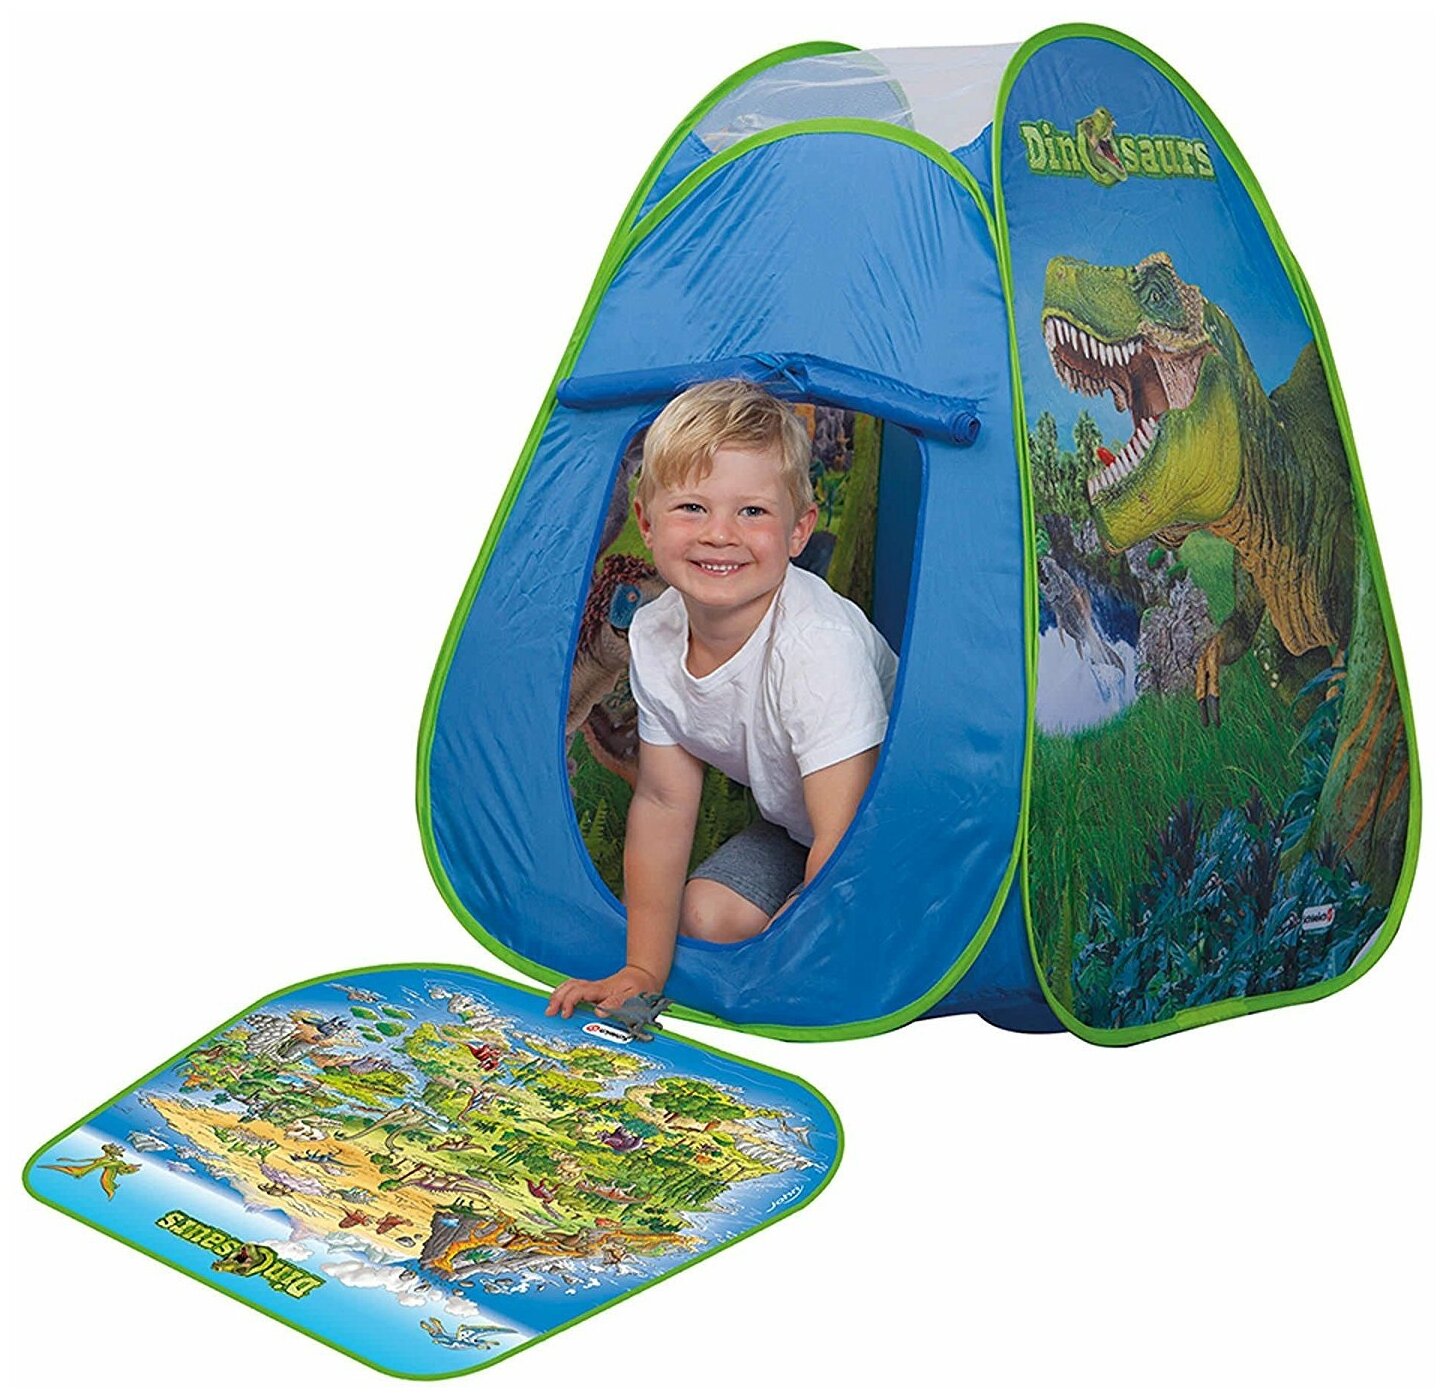 Раскладывающаяся палатка DINOSAURS с цветным игровым матом и фигурками